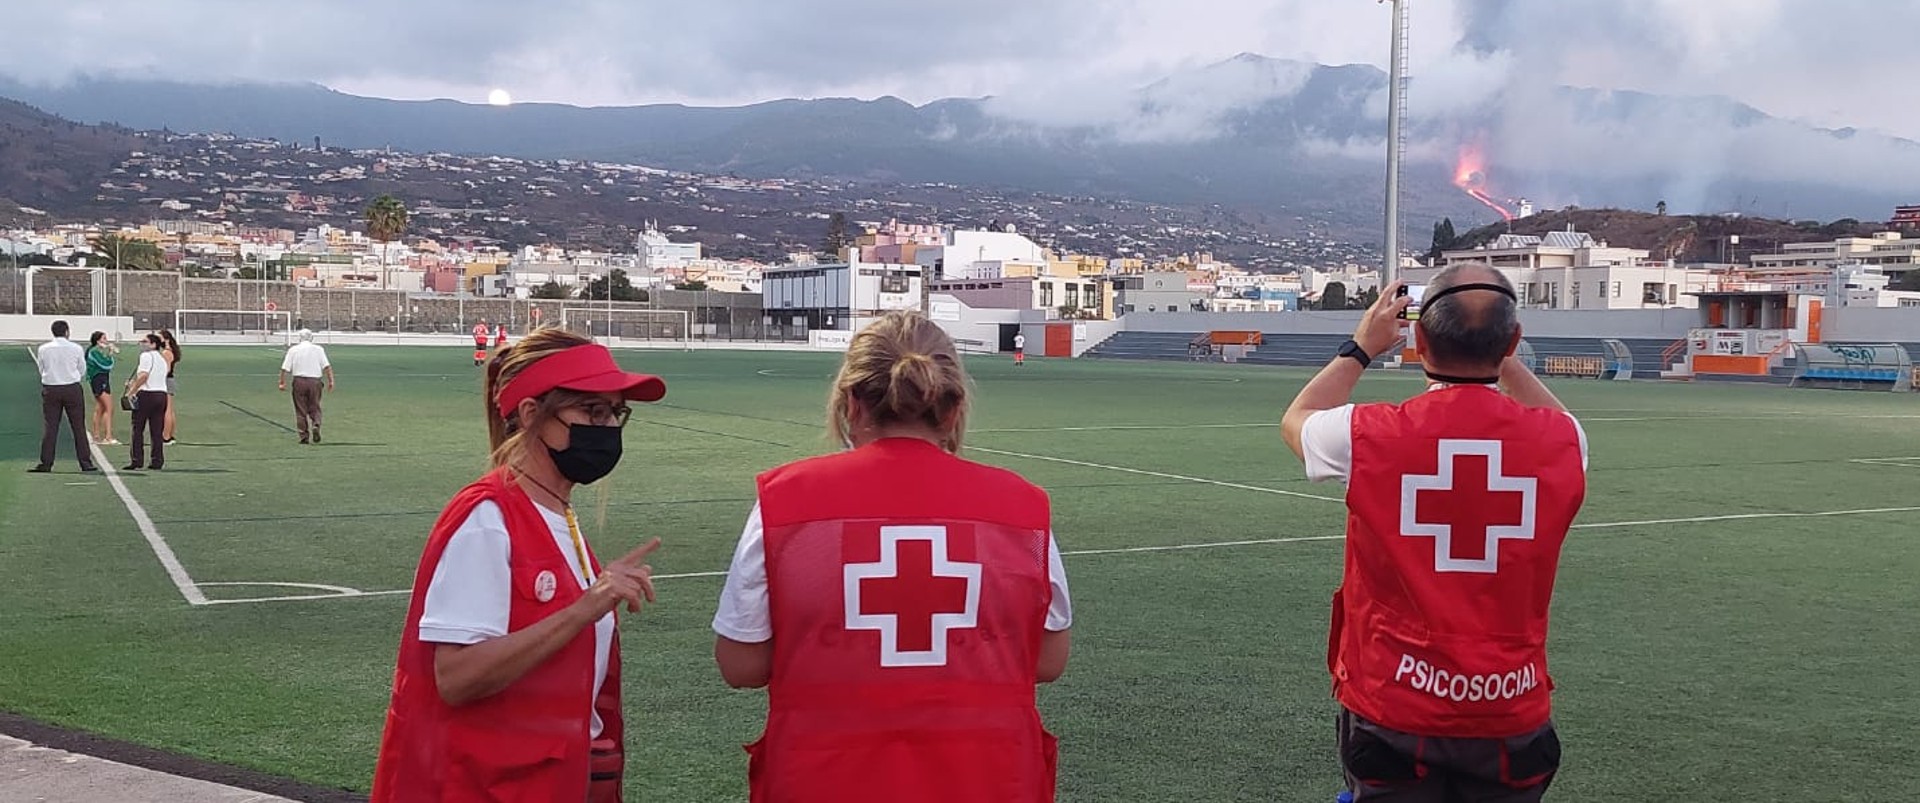 Cruz Roja activa sus Equipos de Respuesta Inmediata en Emergencias y a todo su voluntariado en La Palma